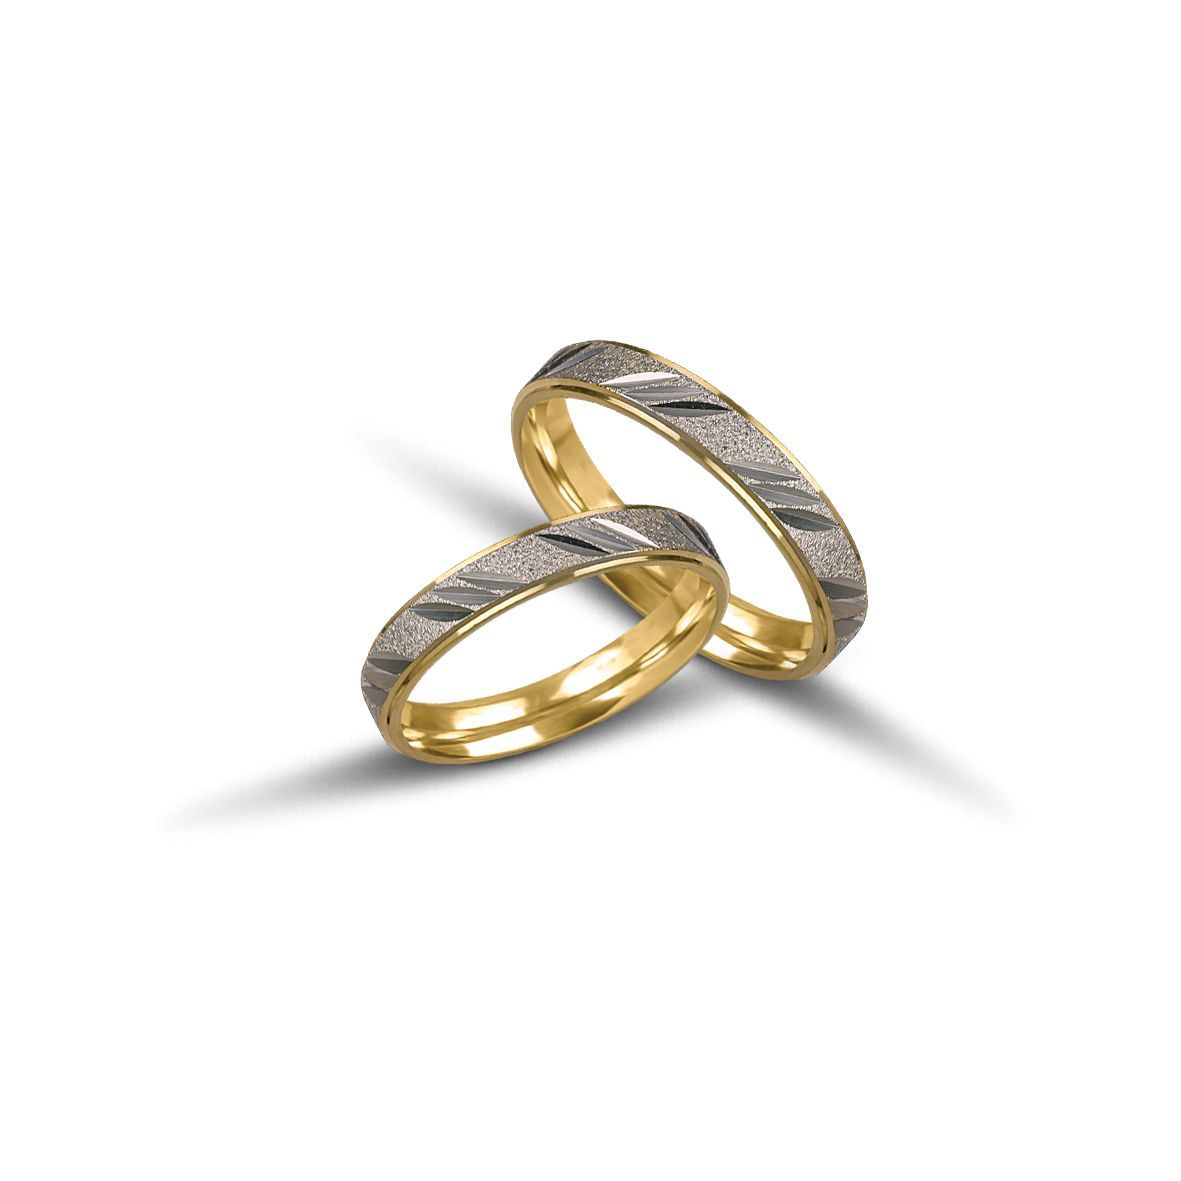 White gold wedding rings 3.7mm (code VK1055/37)